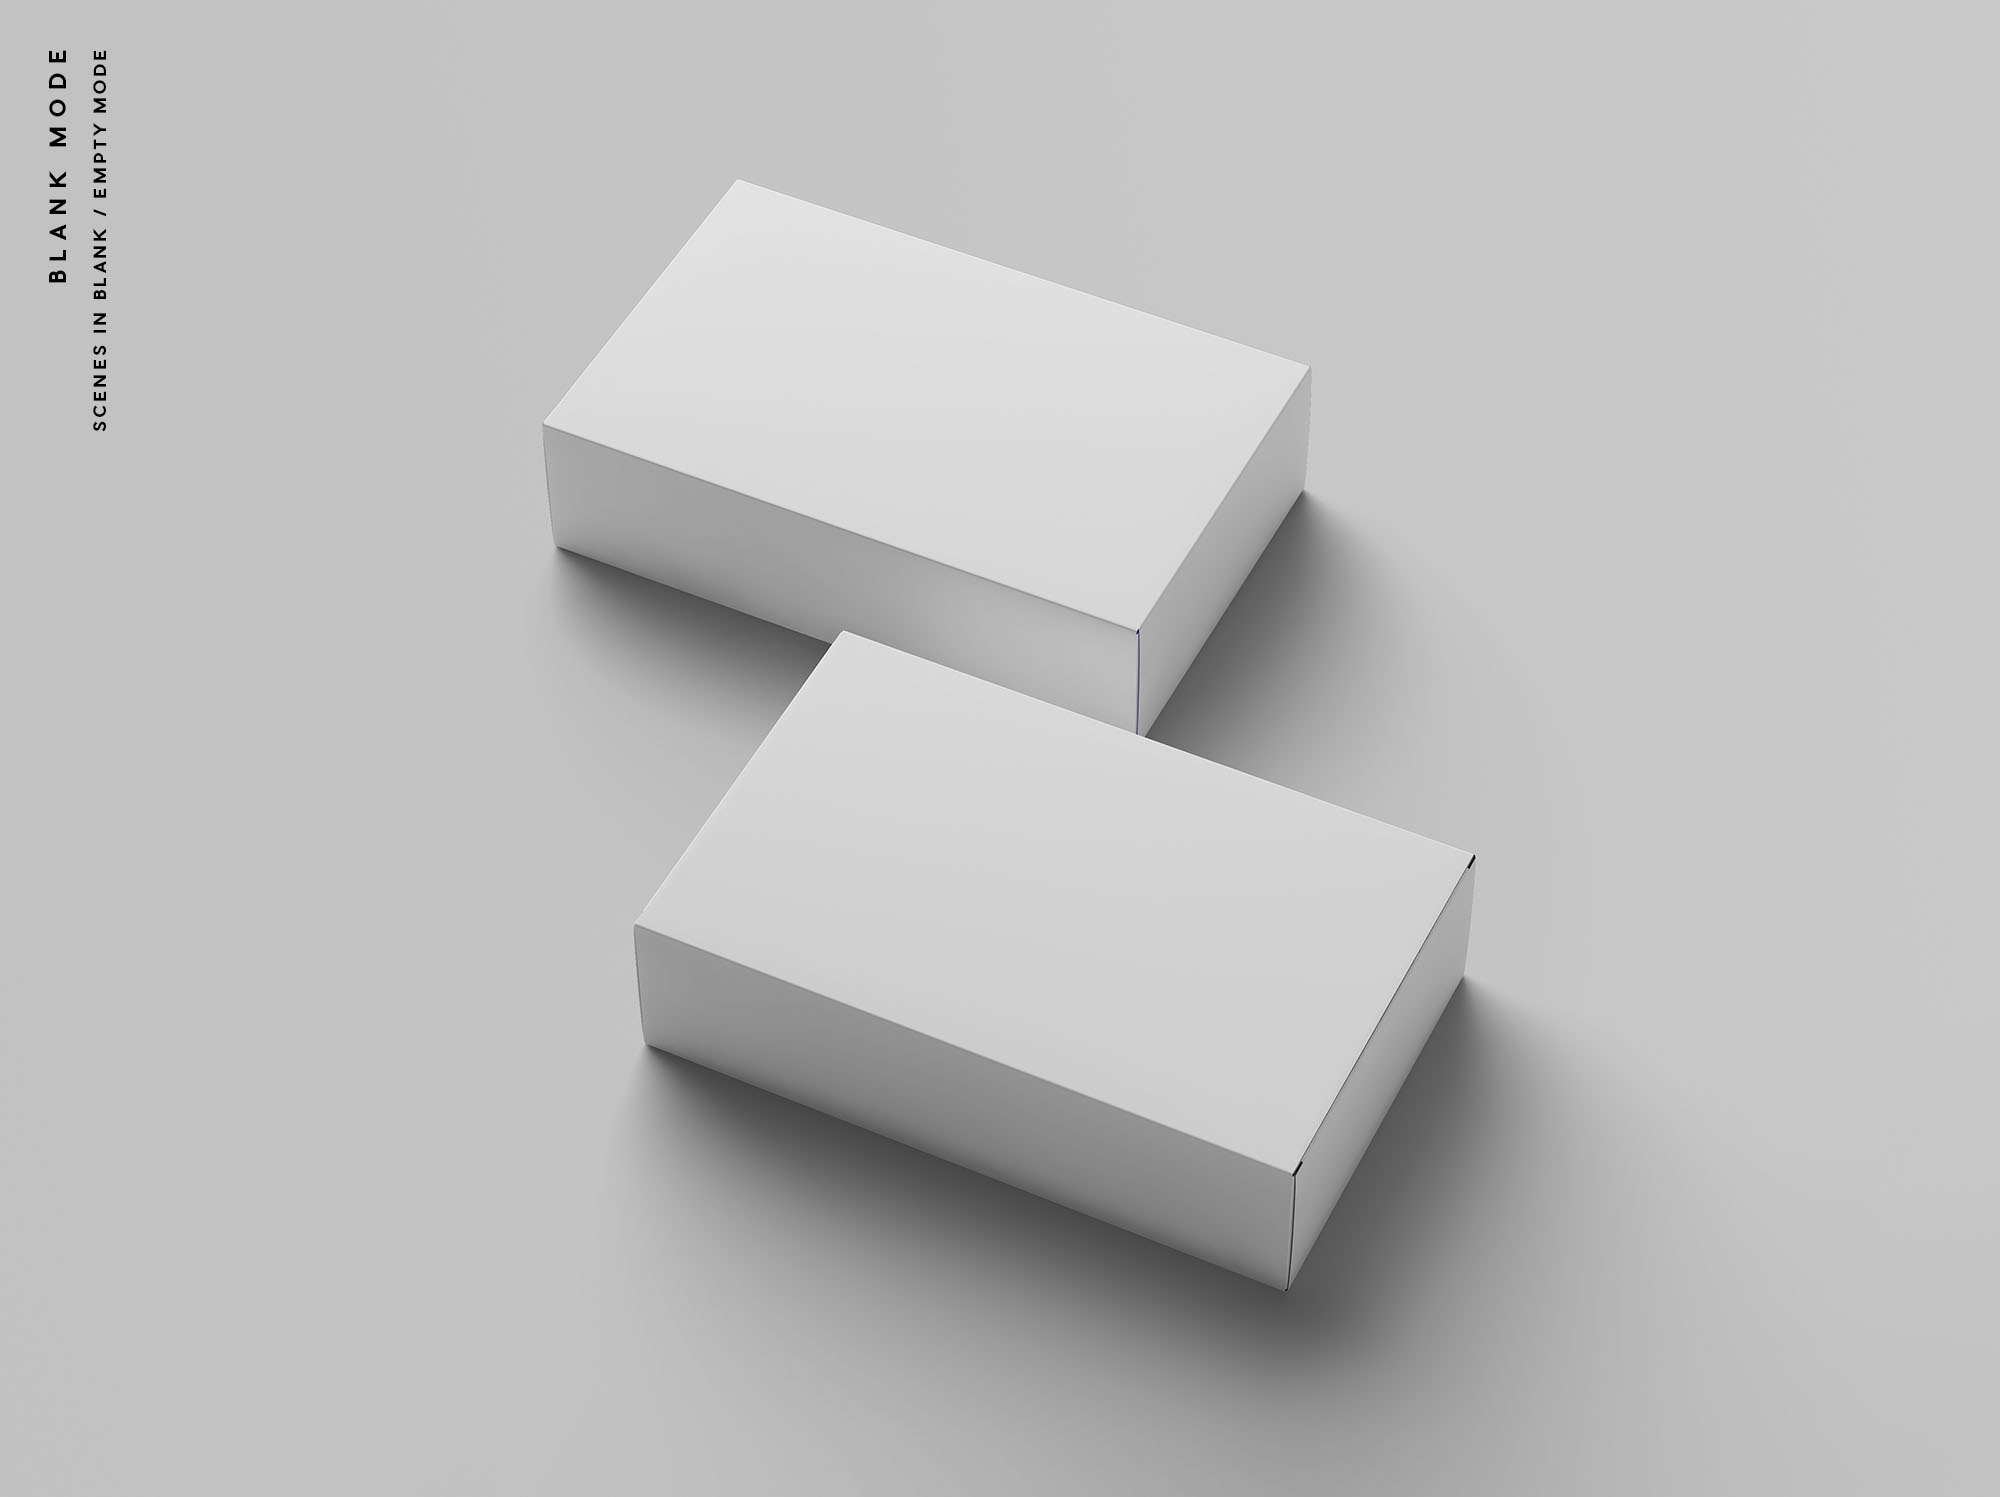 精品礼品/产品包装盒外观设计样机模板 Box Packaging Mockup插图(8)